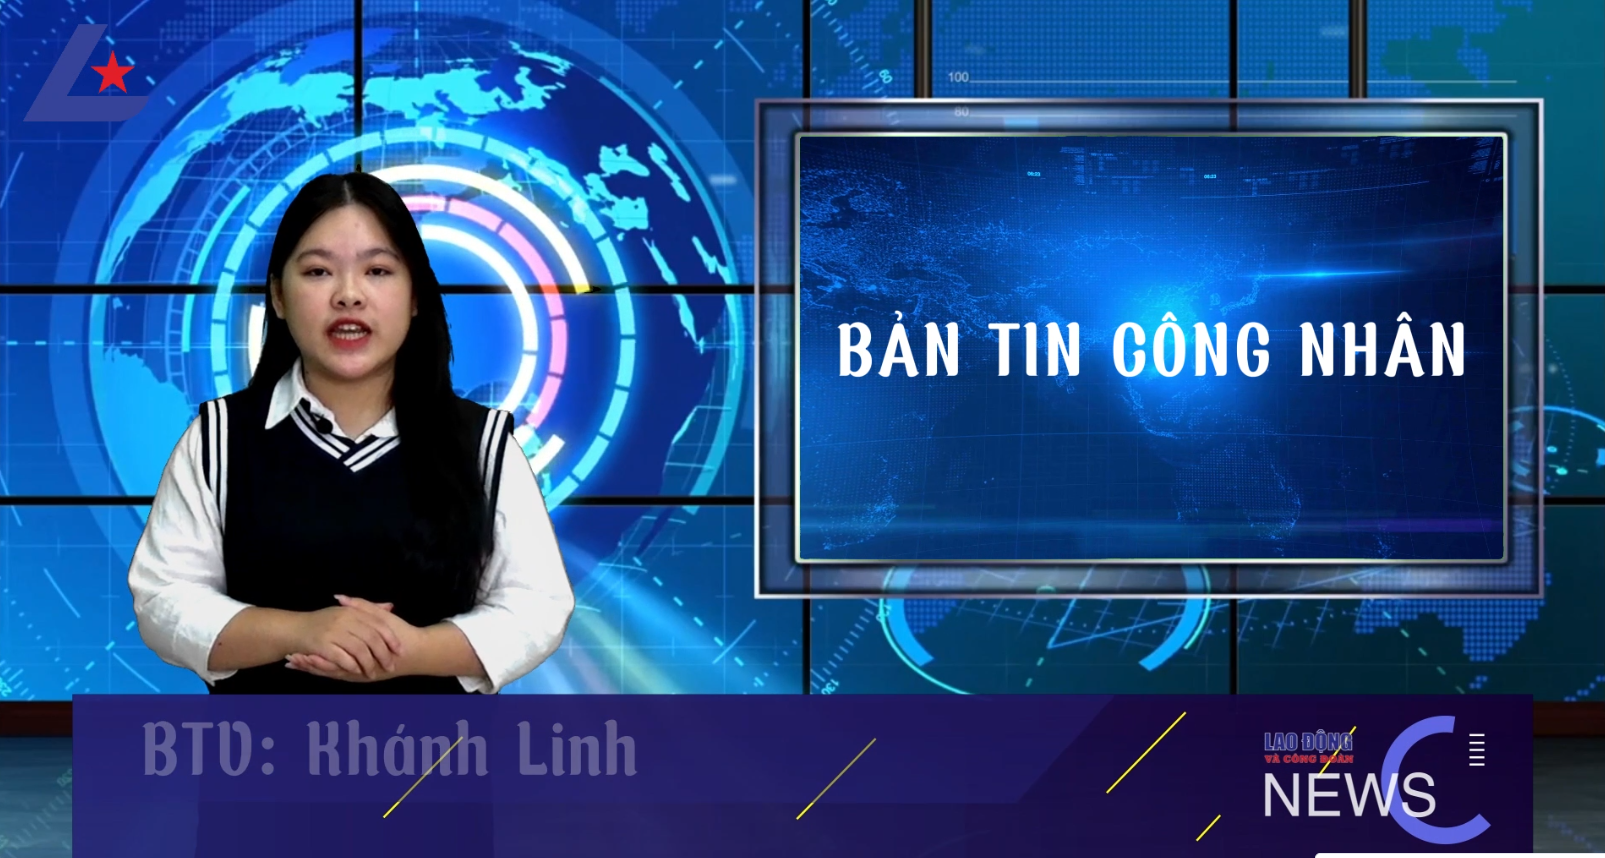 Bản tin công nhân: Cán bộ, đoàn viên và người lao động gửi gắm nhiều kỳ vọng vào Đại hội 13 Công đoàn Việt Nam